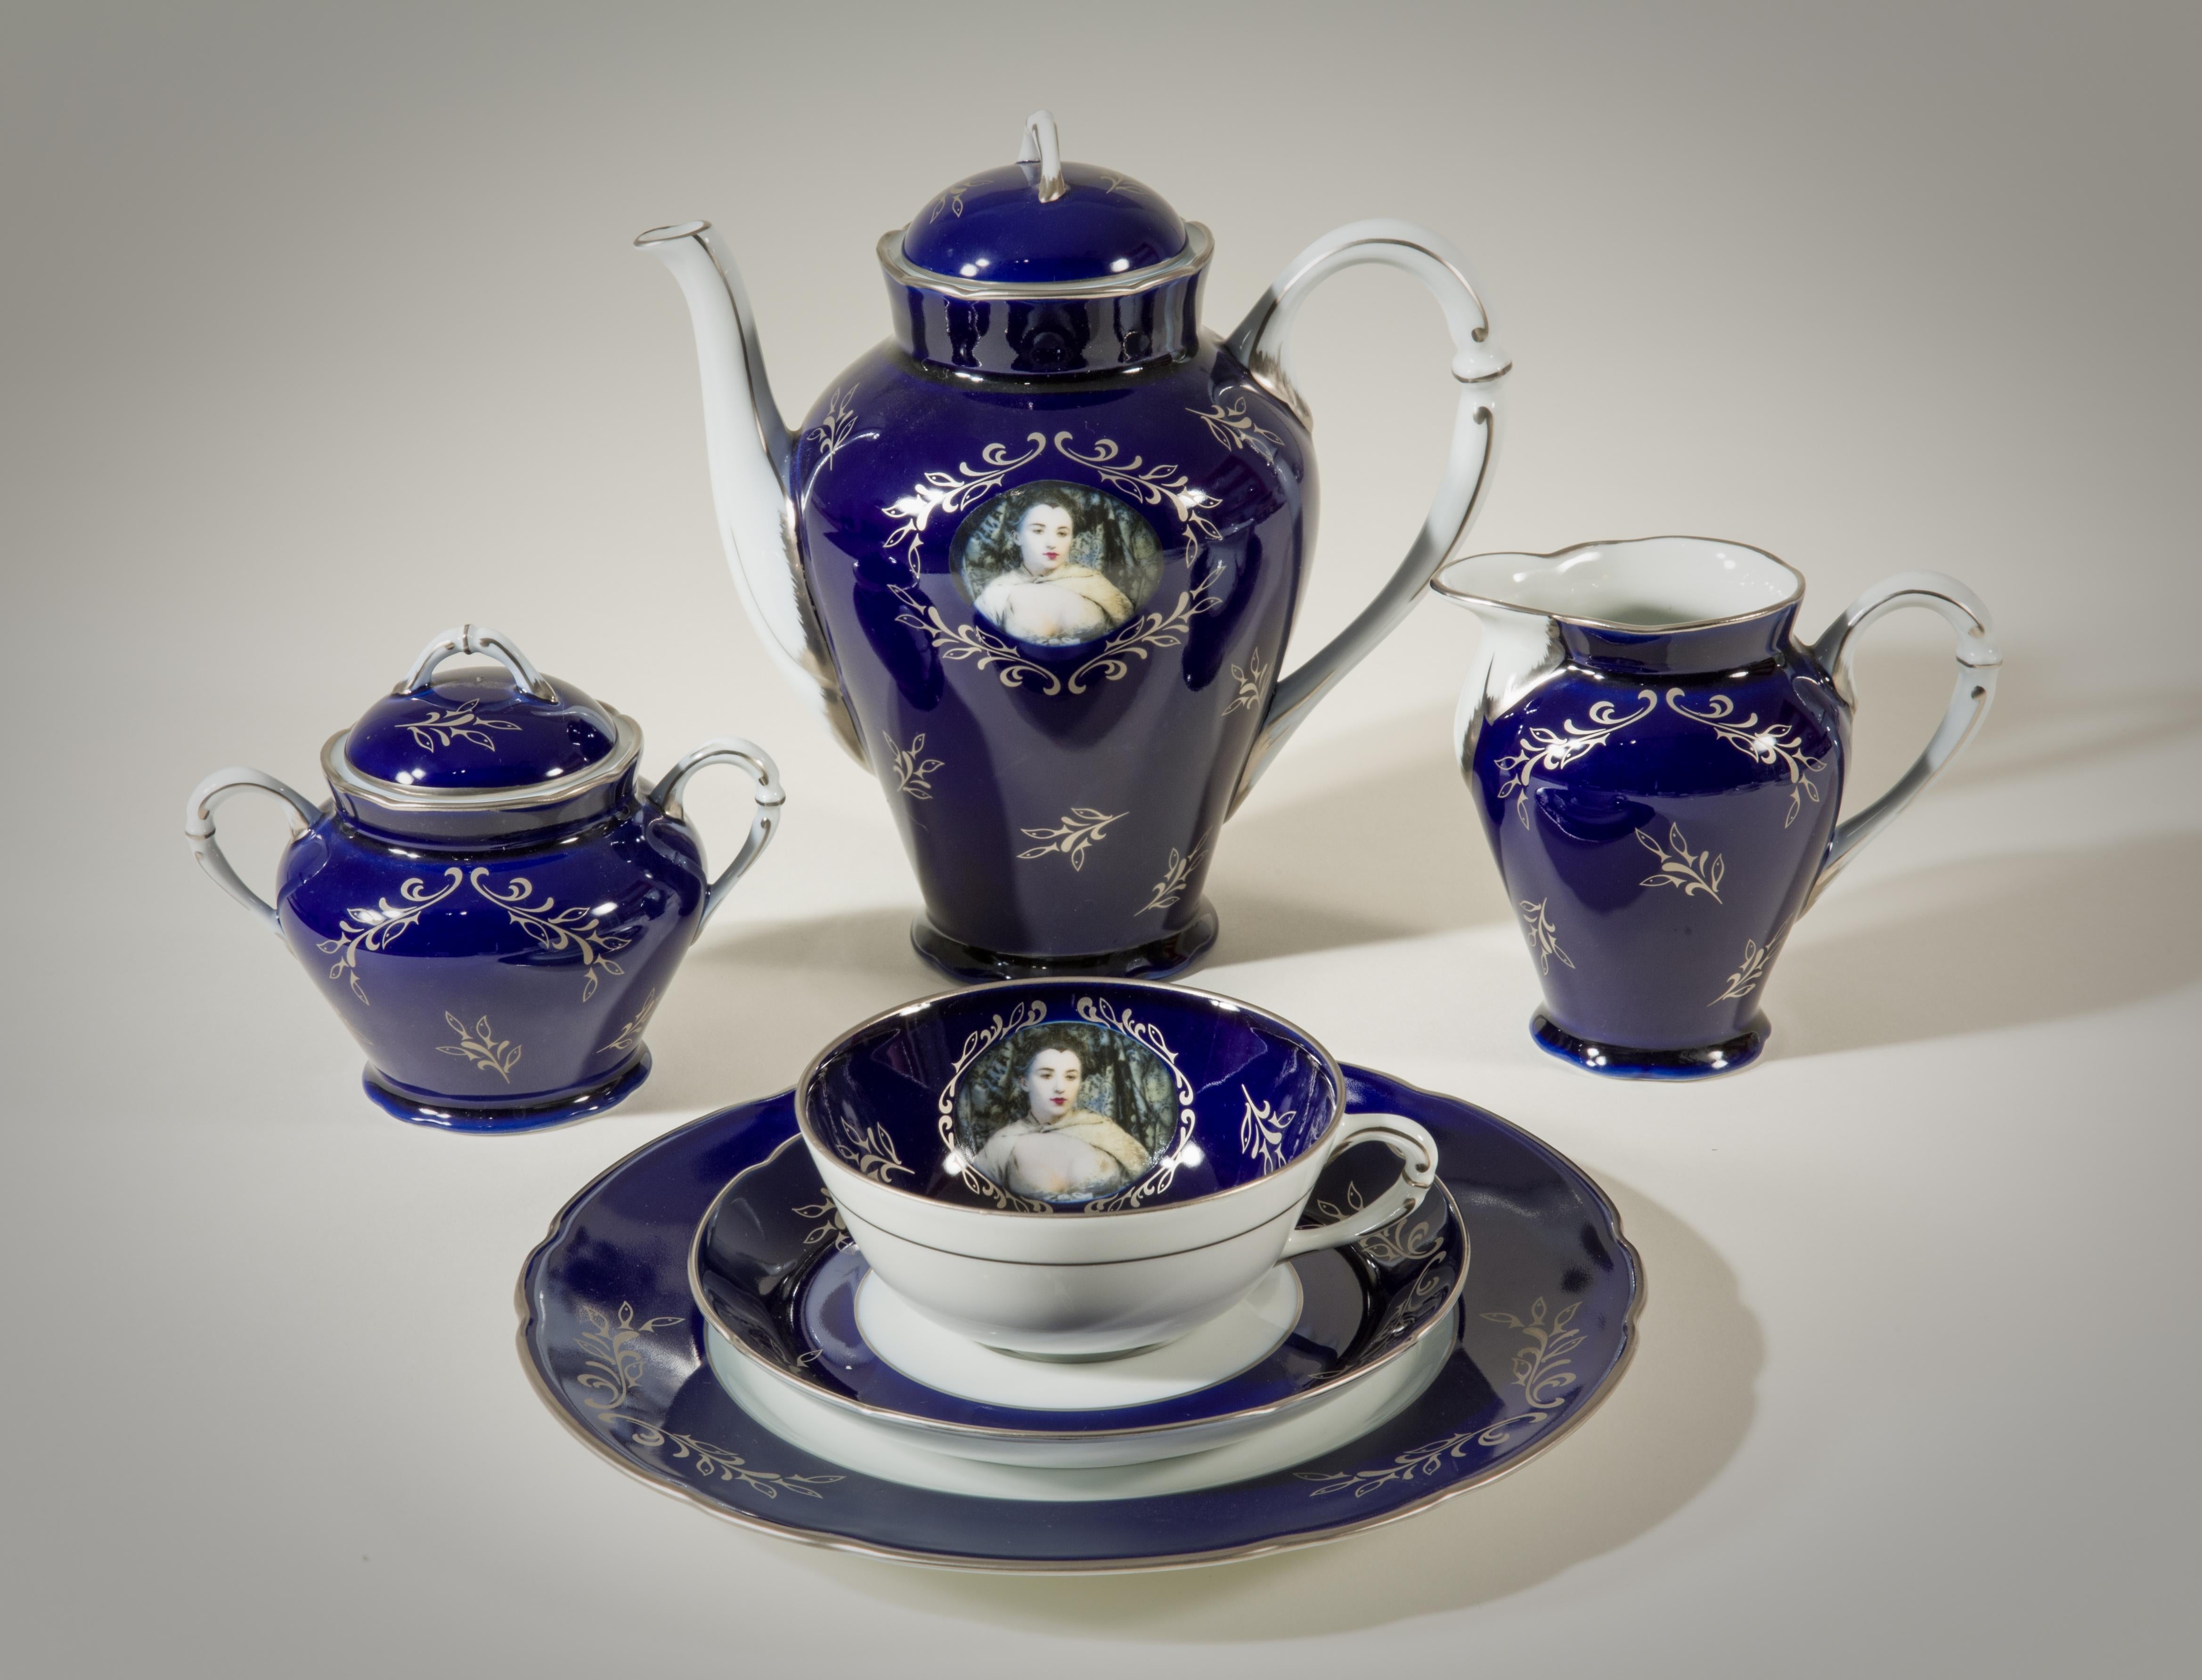 Madame de Pompadour (née Poisson) tea set - Mixed Media Art by Cindy Sherman